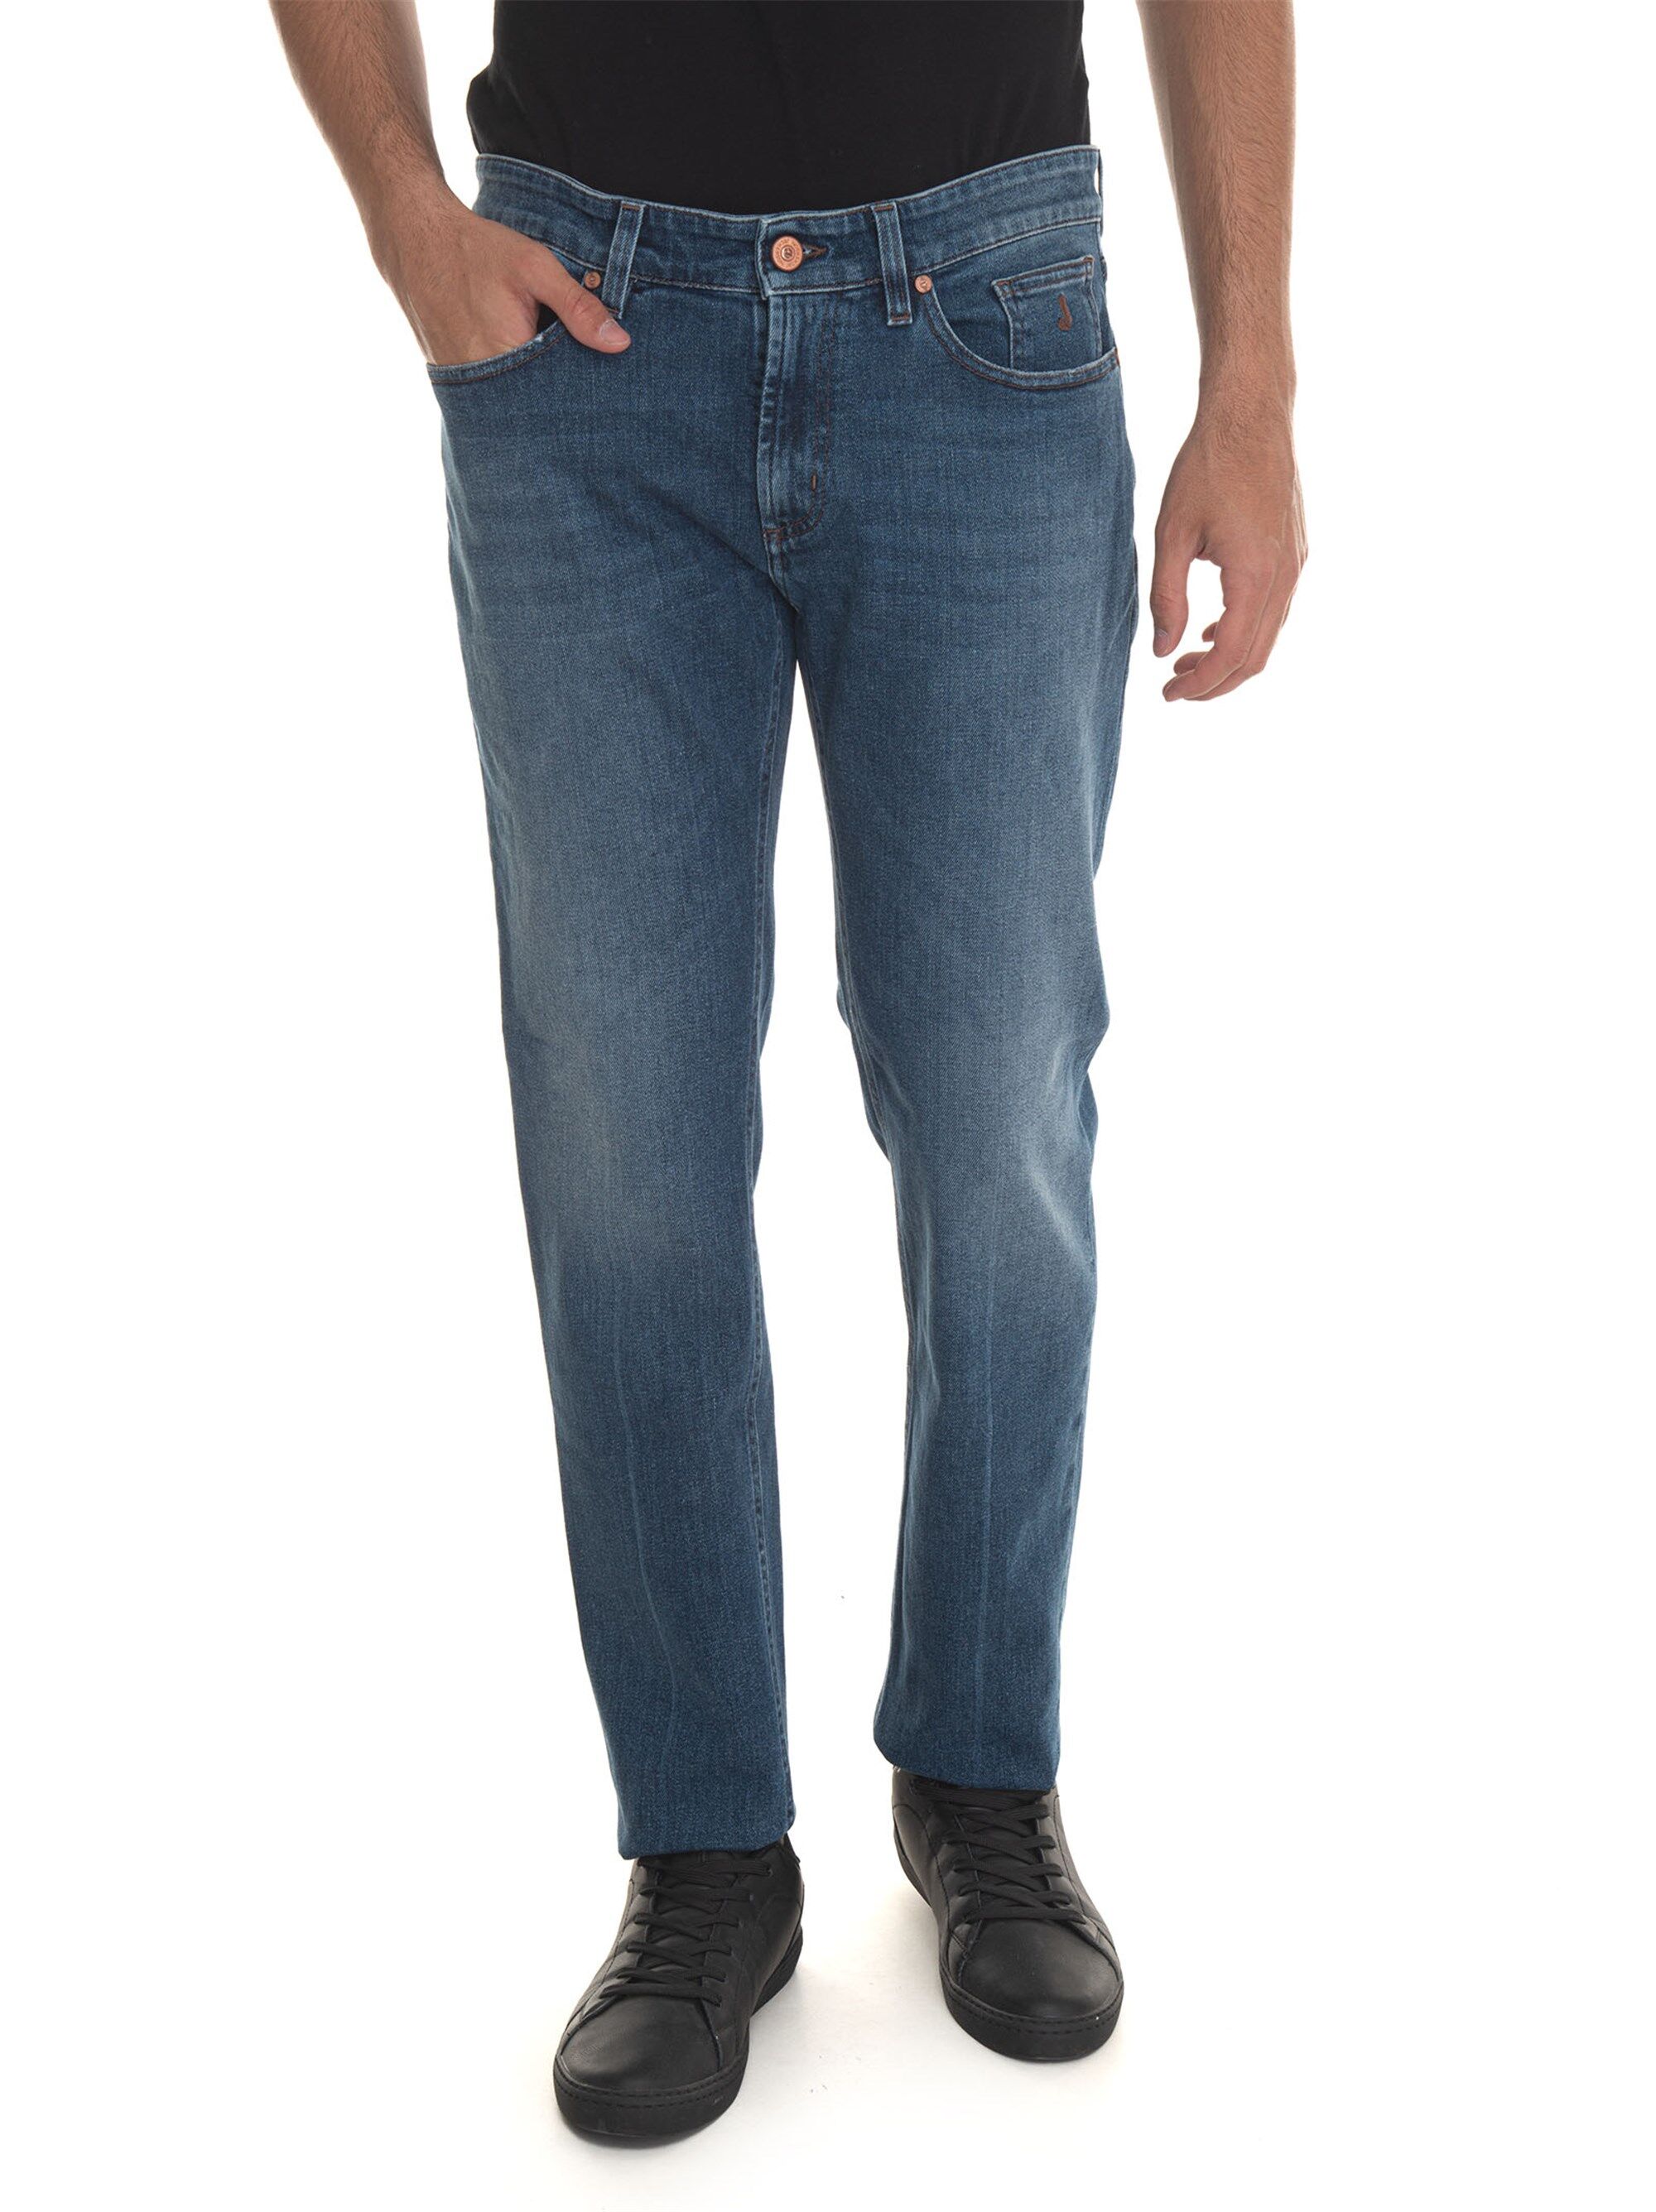 Jeckerson Jeans 5 tasche Denim medio Uomo 36